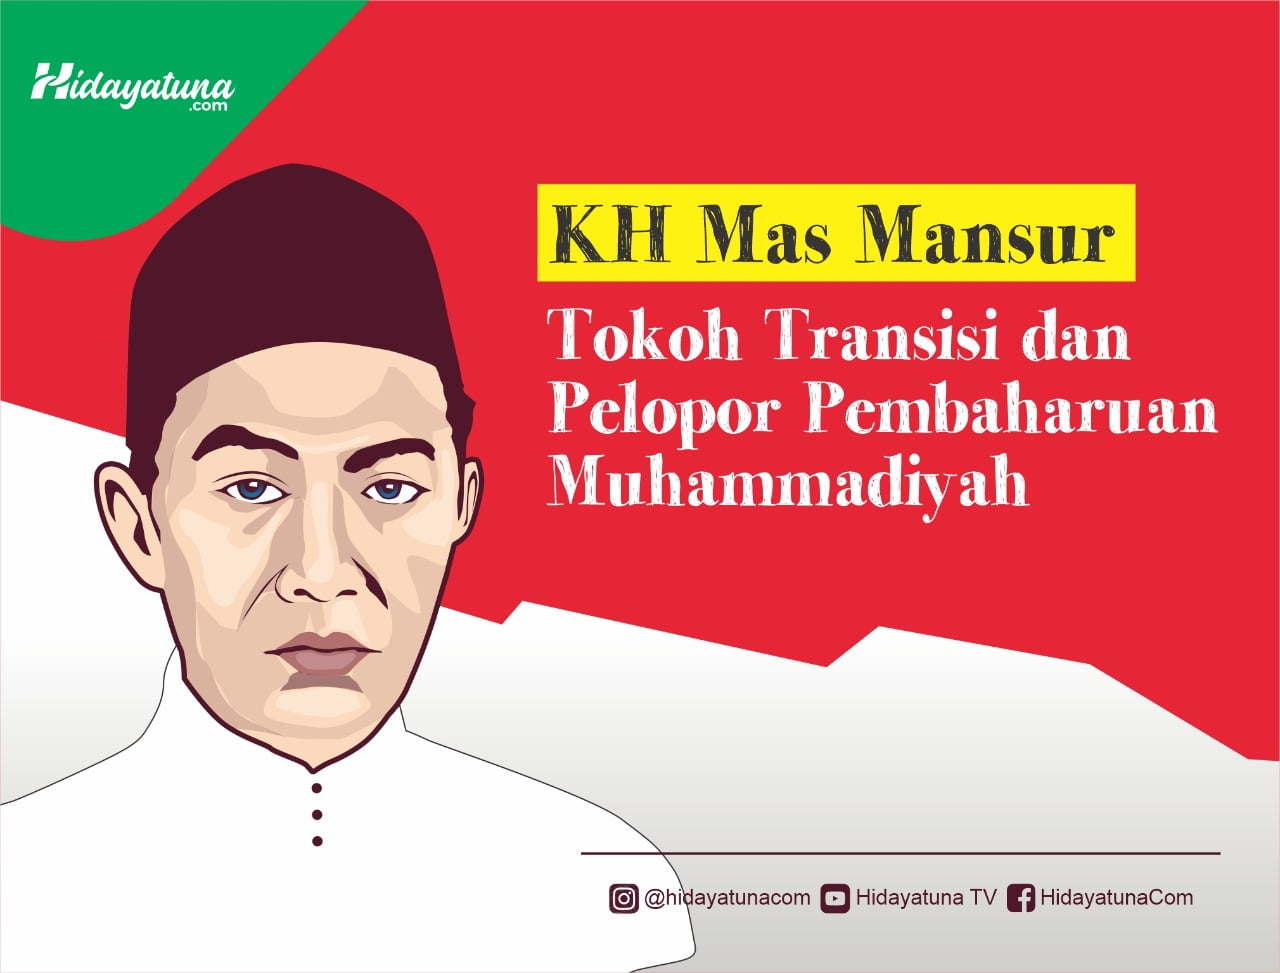  KH Mas Mansur: Tokoh Transisi dan Pelopor Pembaharuan Muhammadiyah